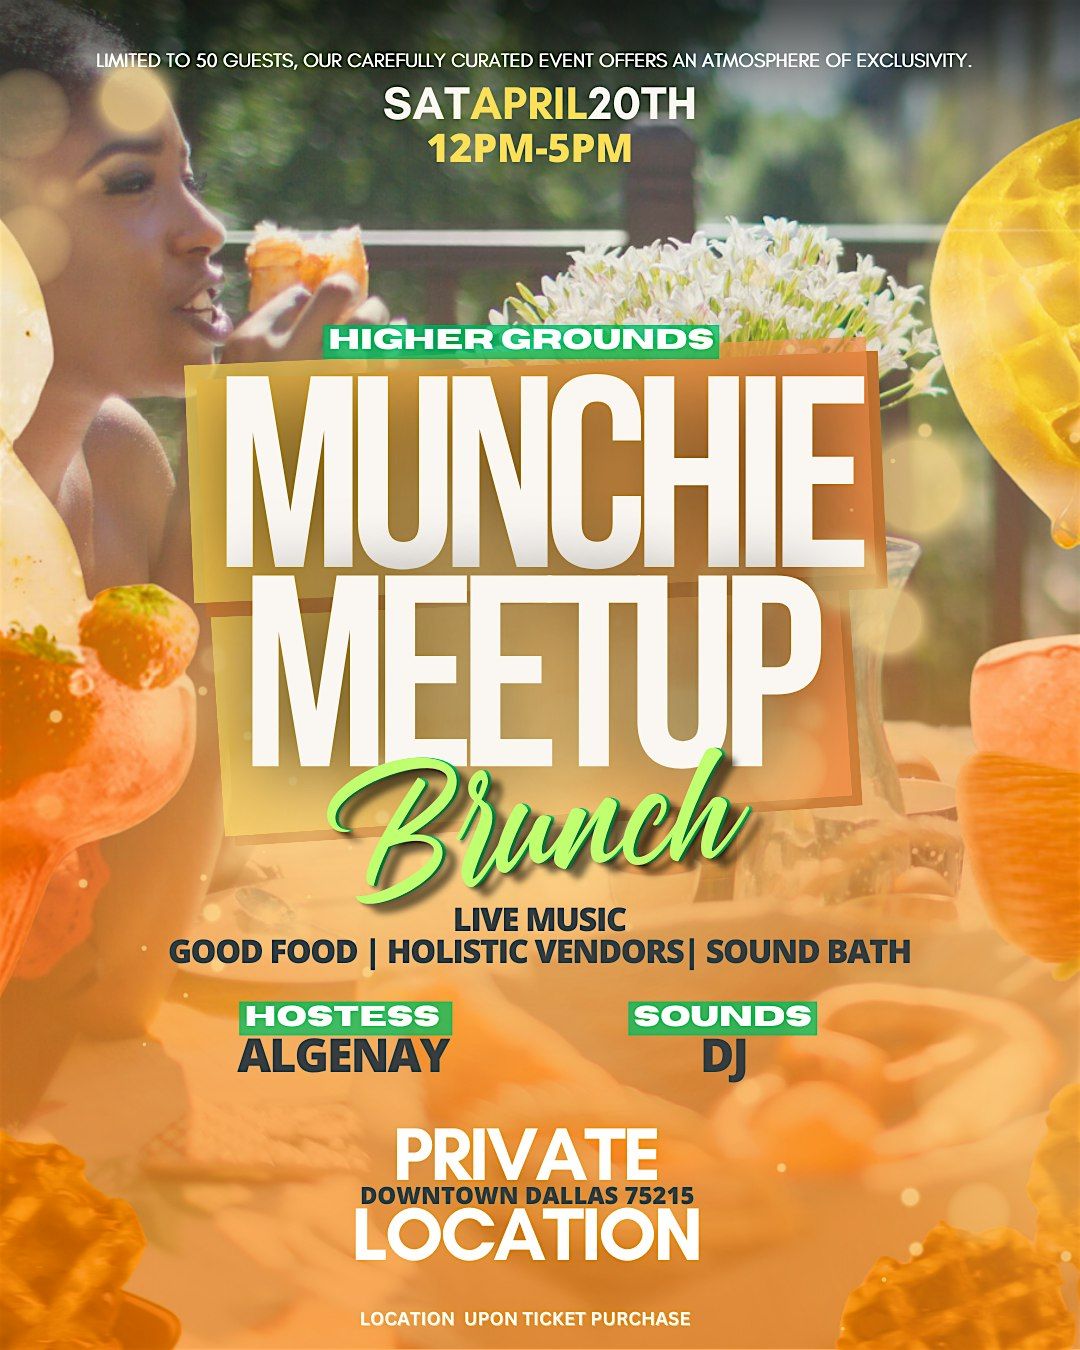 Munchie Meetup